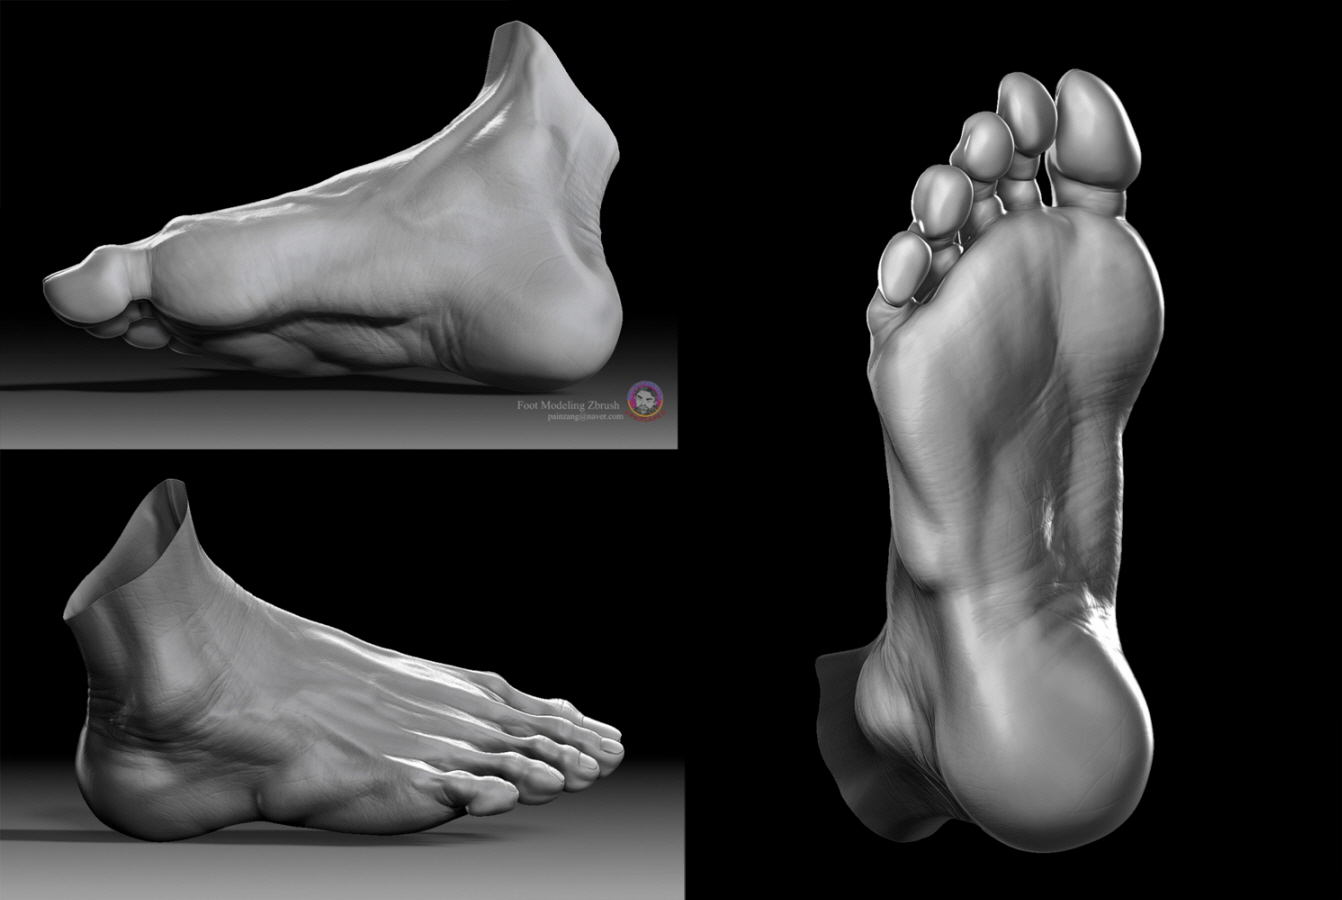 Foot_modeling_Zbrush222.jpg